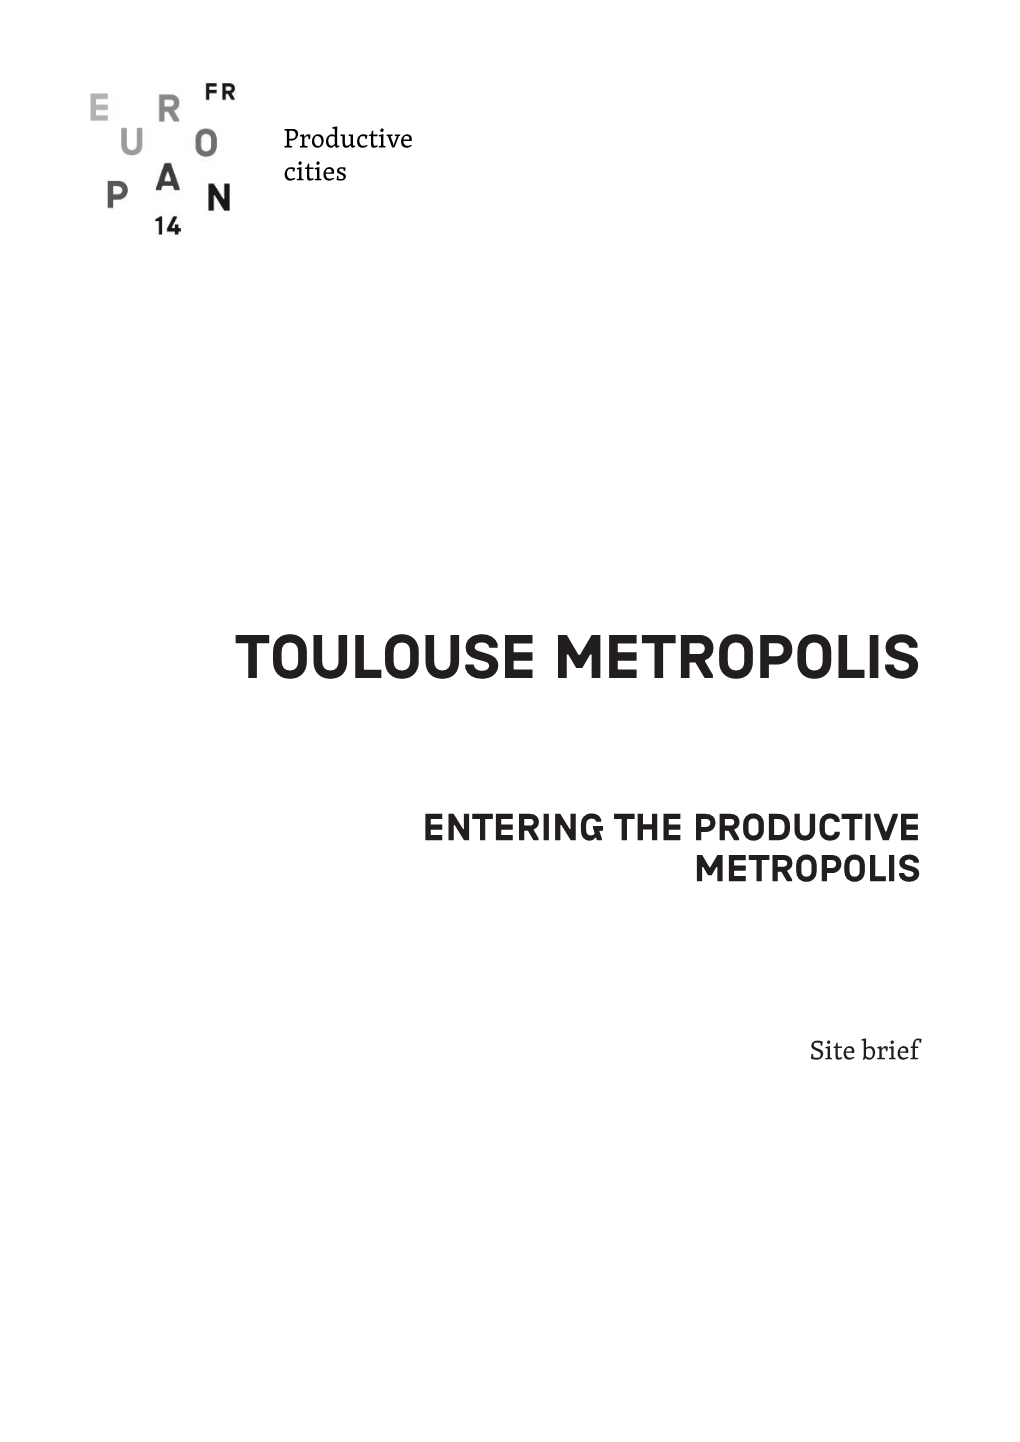 Toulouse Metropolis